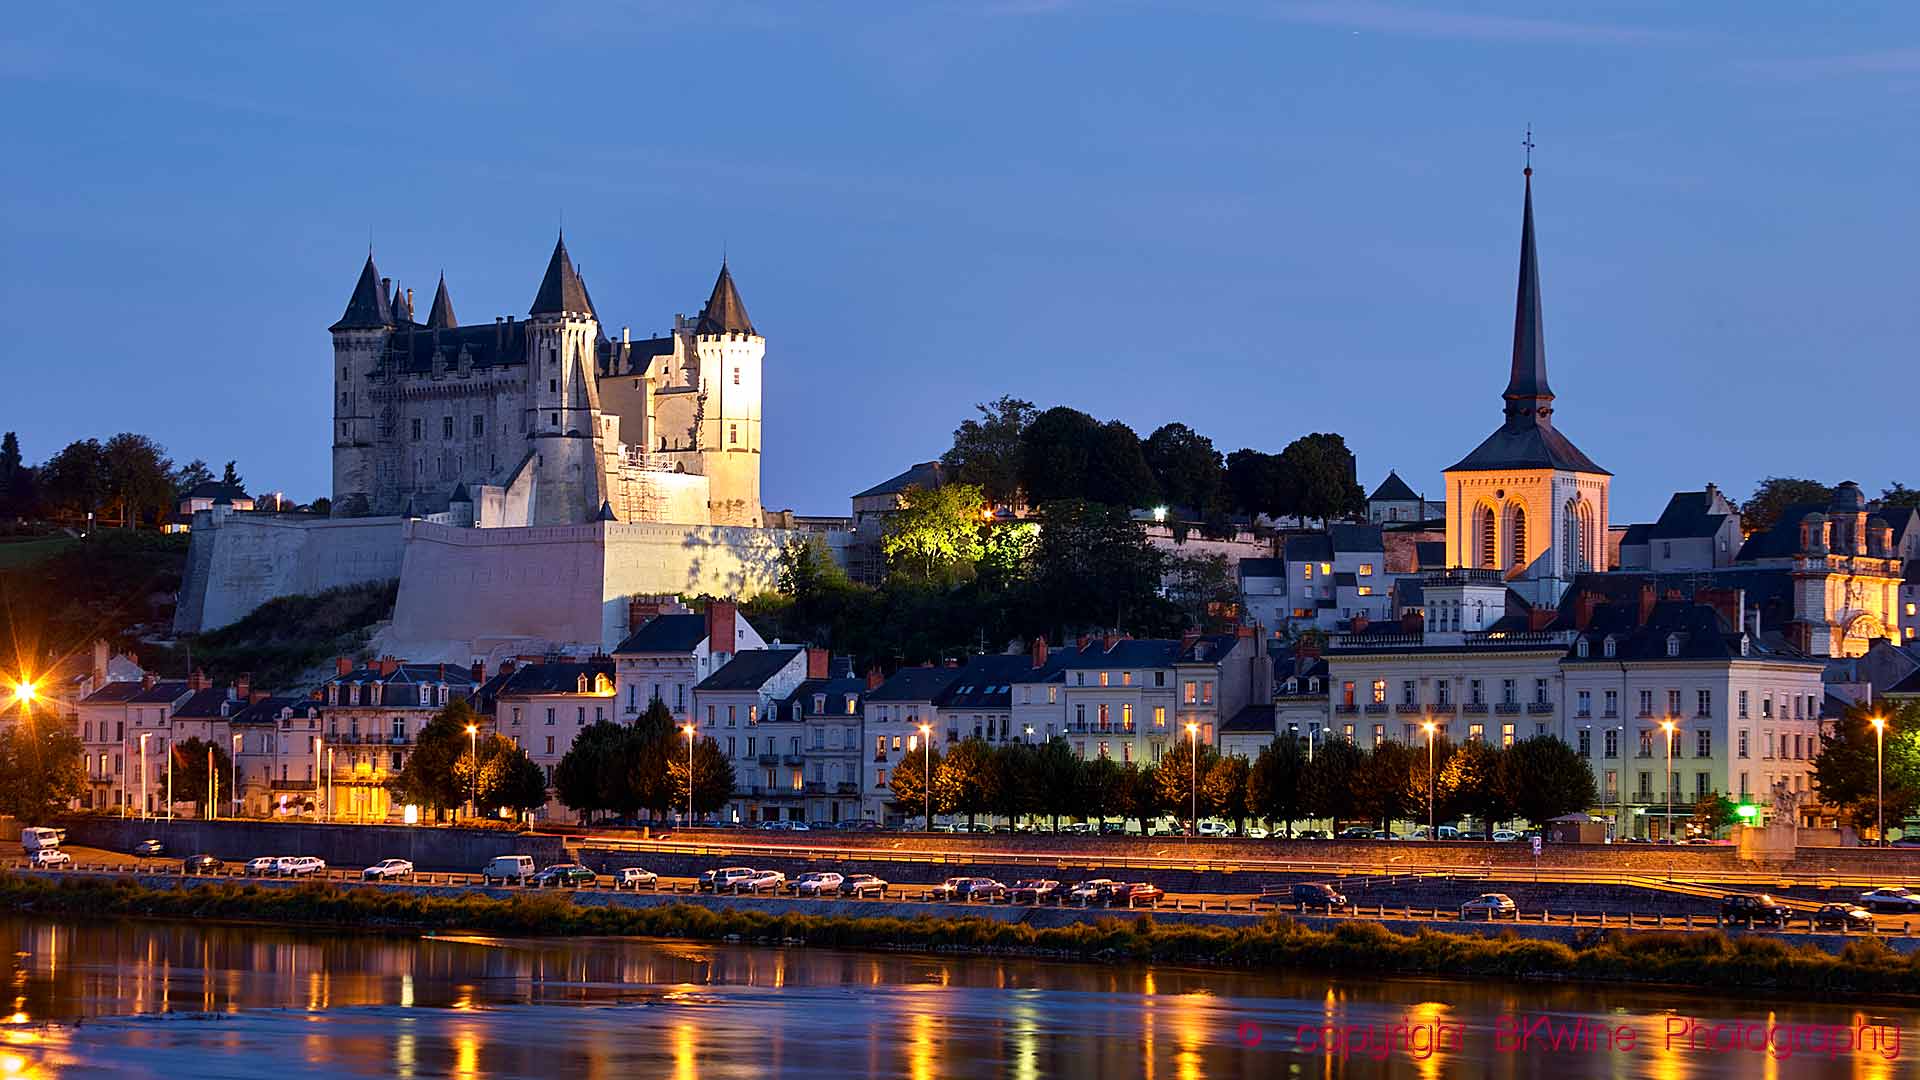 Ett av de många vackra slotten längs Loirefloden, detta i staden Saumur